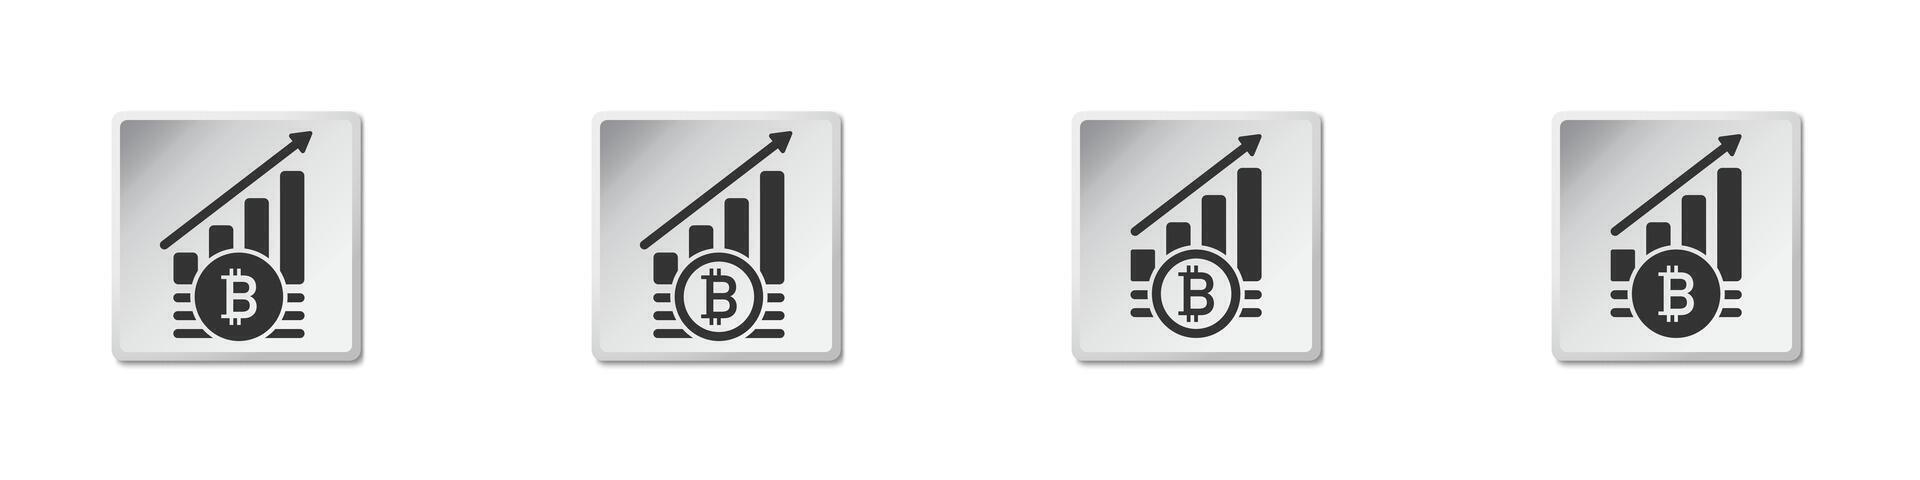 bitcoin incrementar símbolo. criptomoneda crecimiento icono. plano vector ilustración.